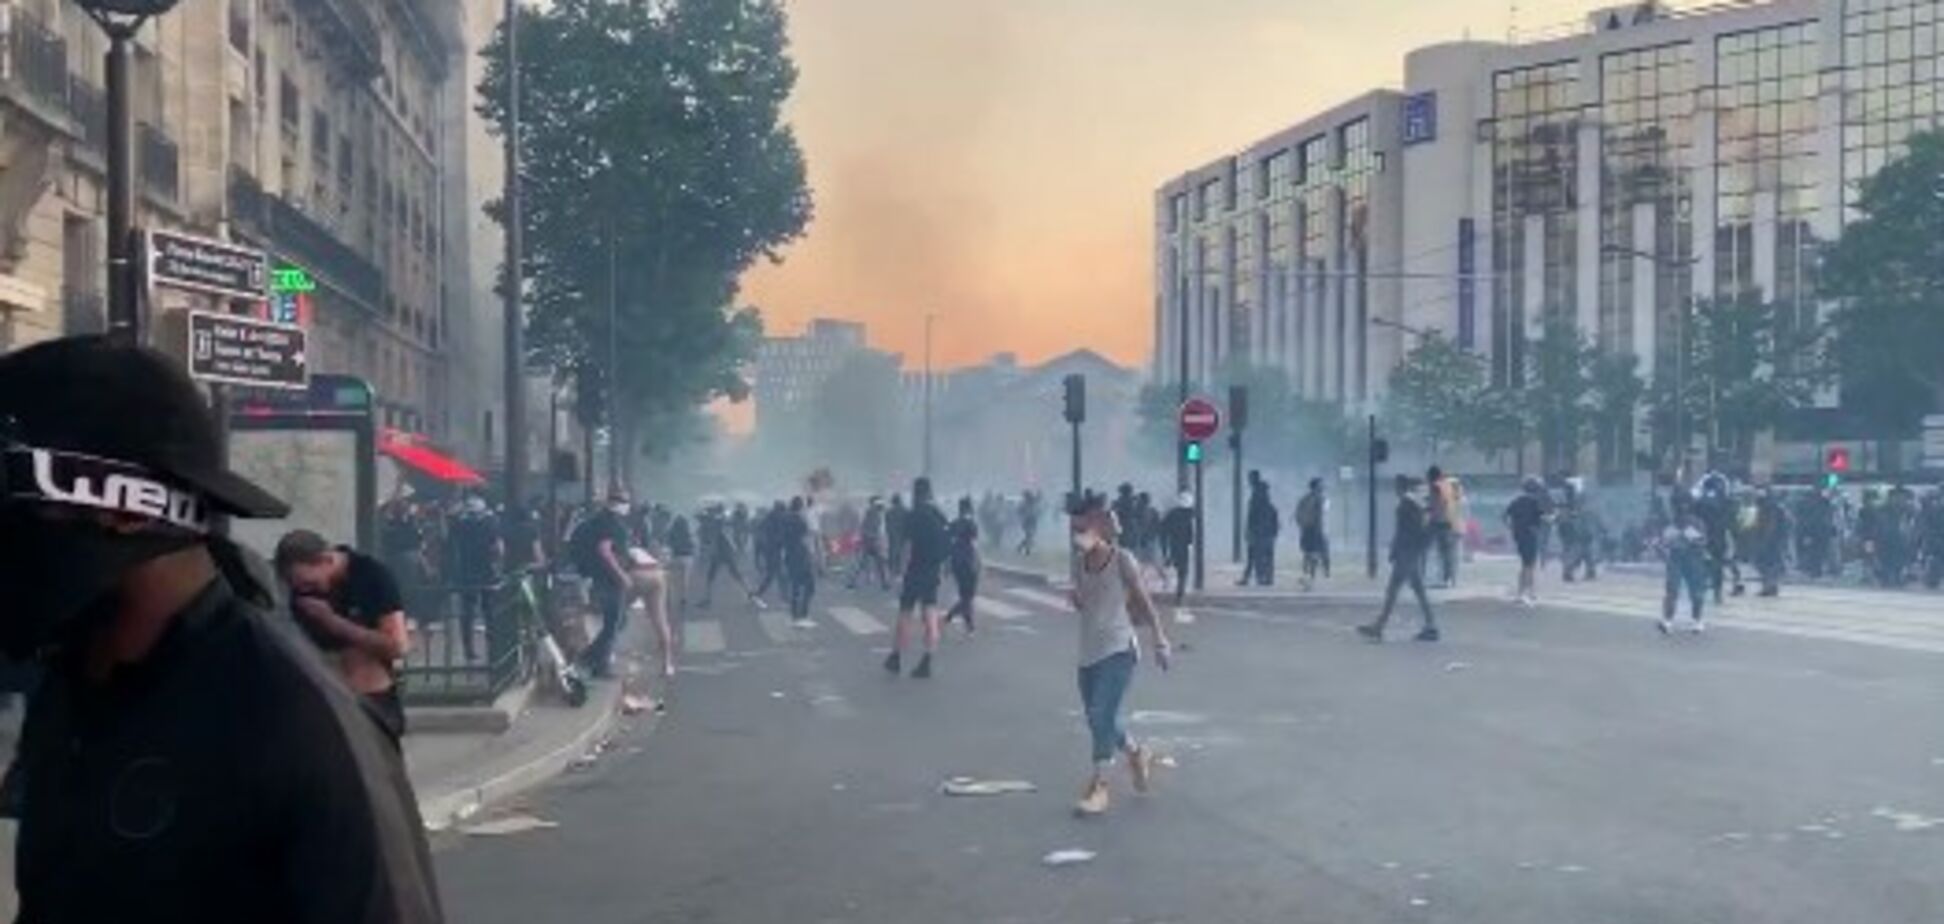 Антирасистські протести докотилися до Франції: поліція застосувала газ. Фото та відео